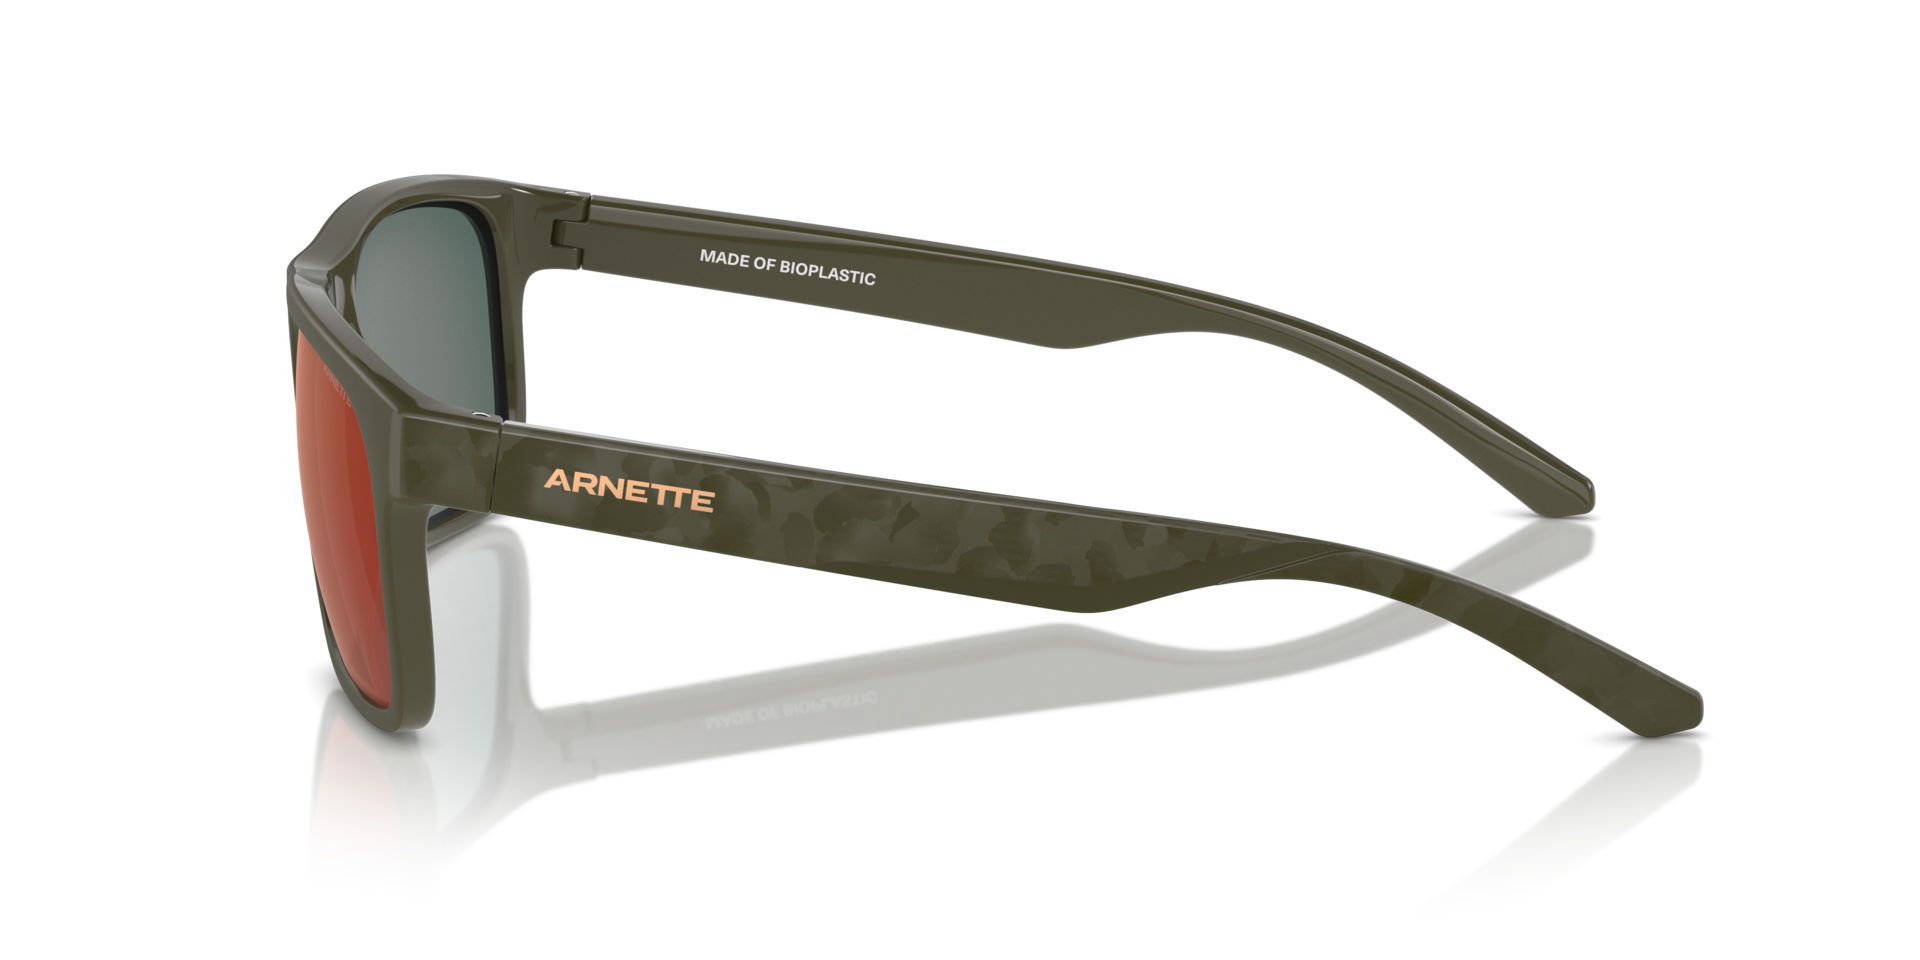 Das Bild zeigt die Sonnenbrille AN4341 28546Q von der Marke Arnette in braun.